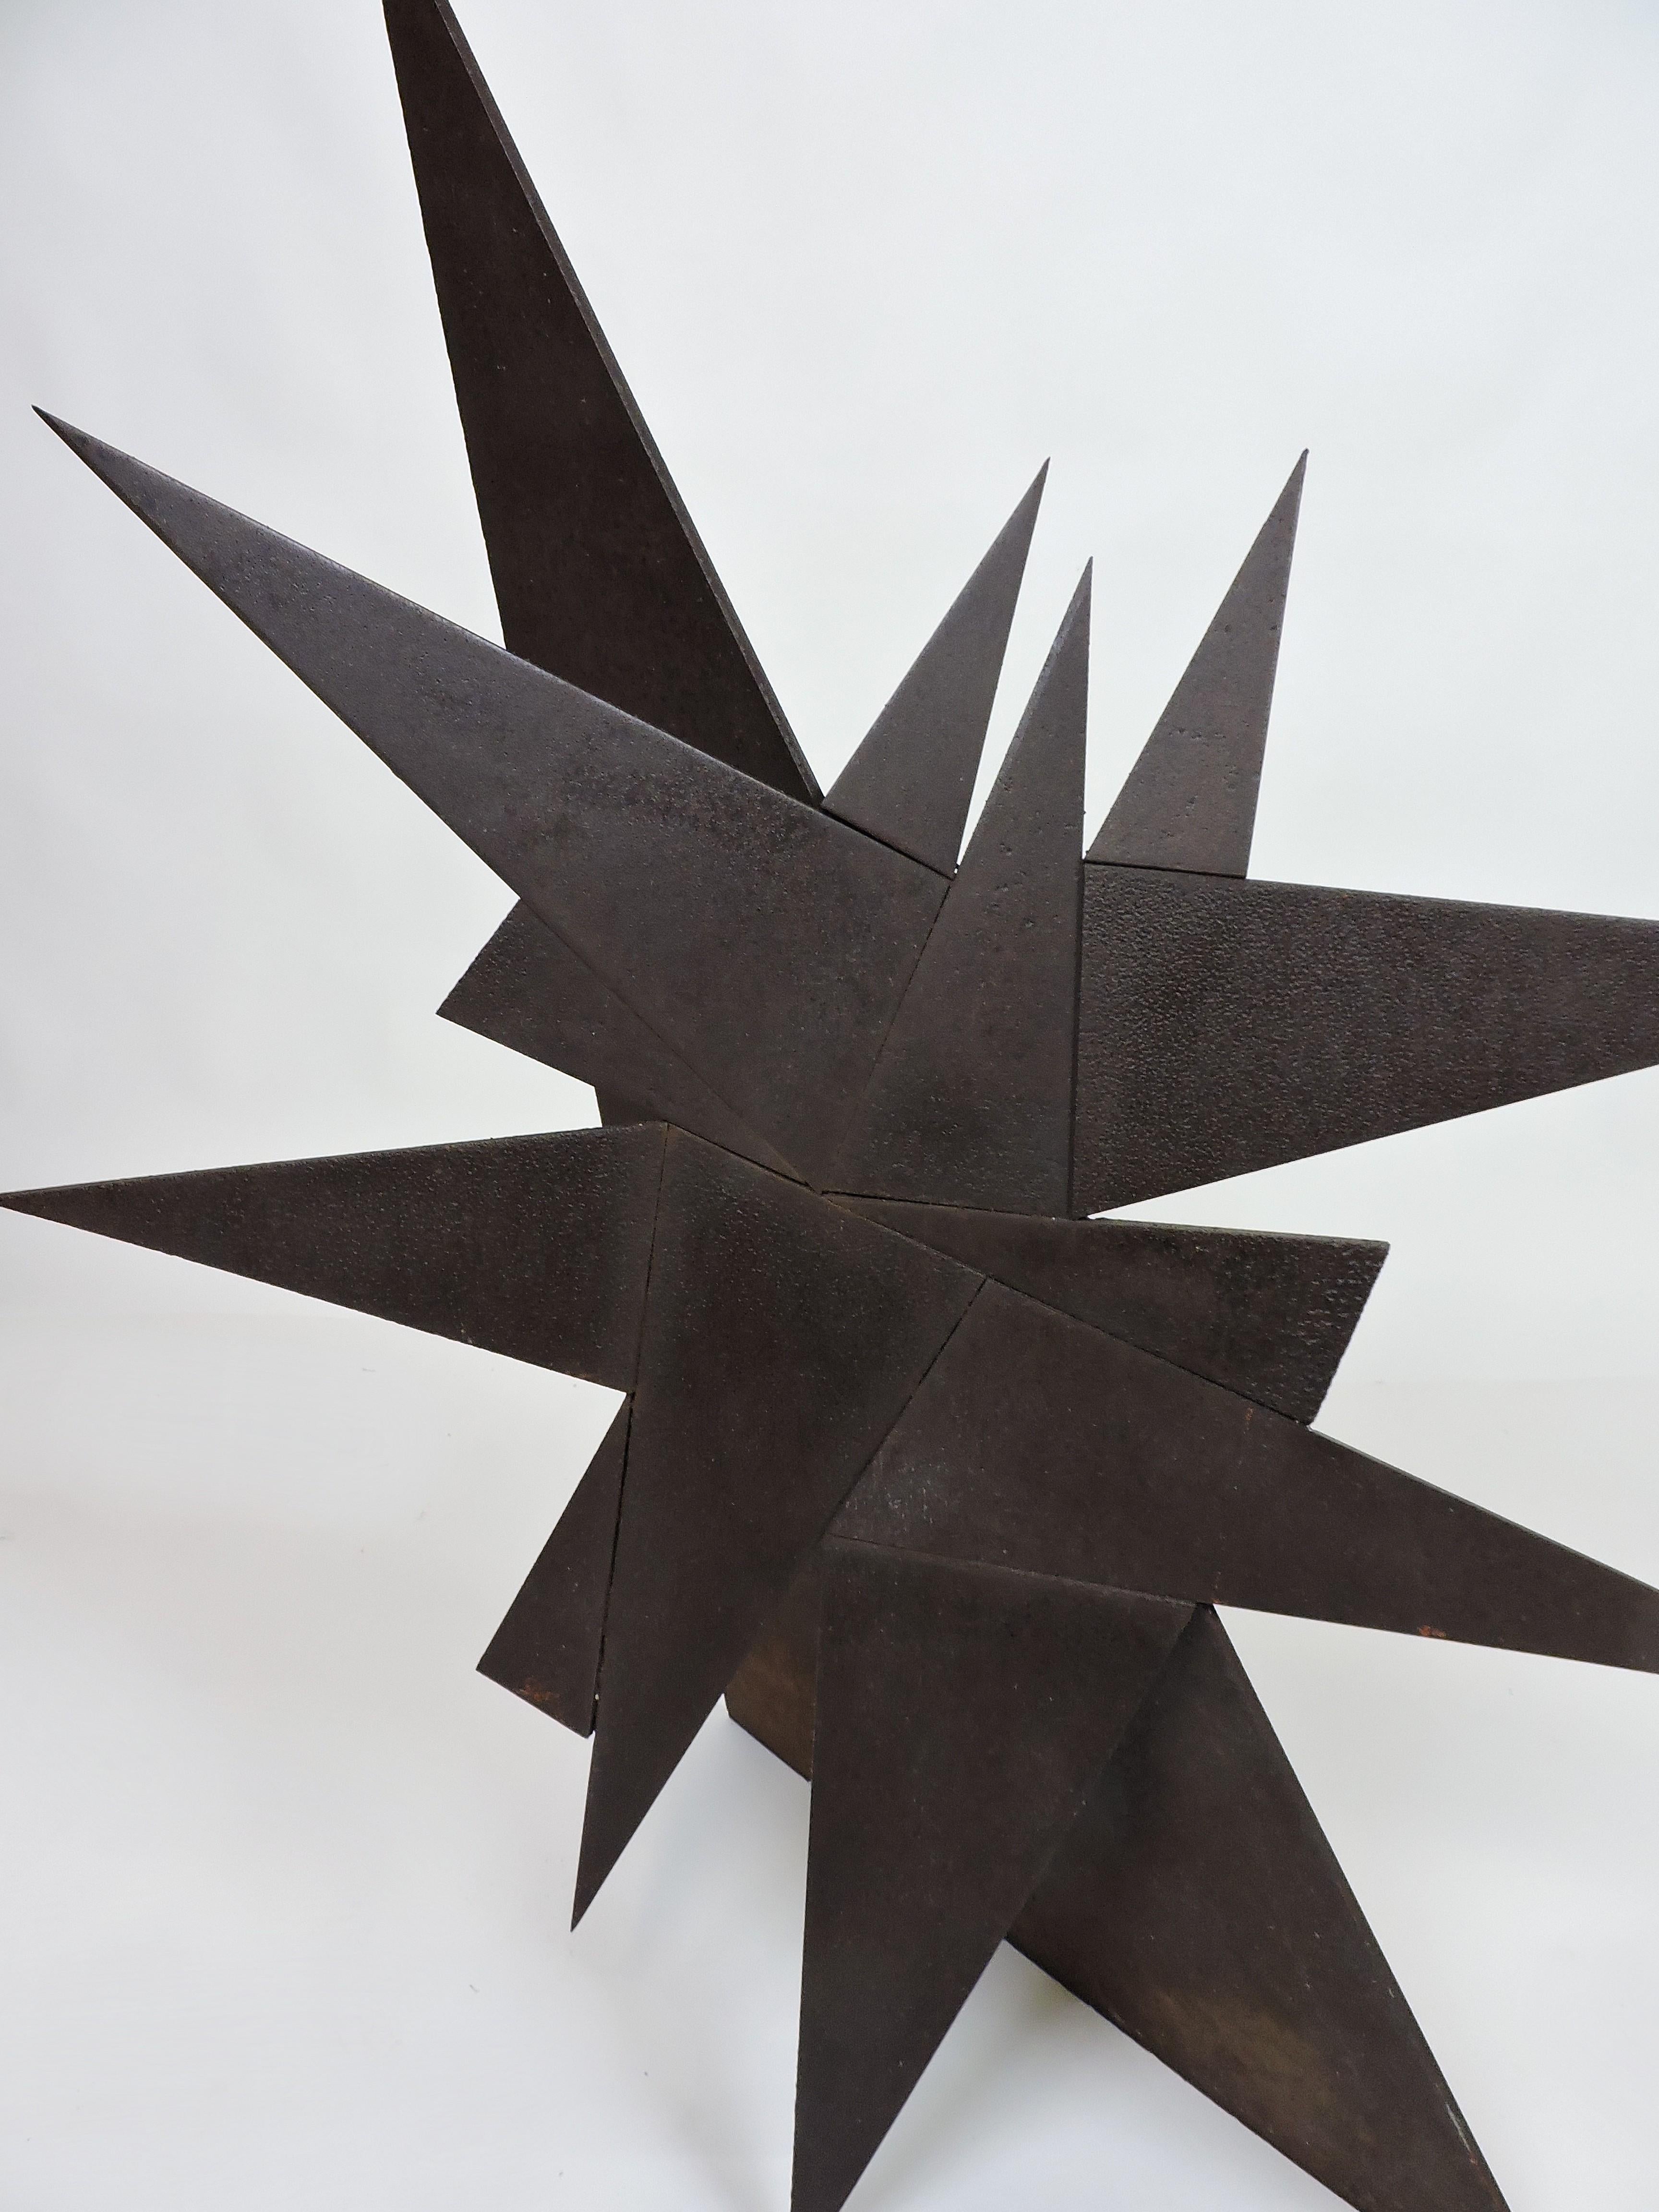 Abstract Industrial Welded Steel Sculpture 